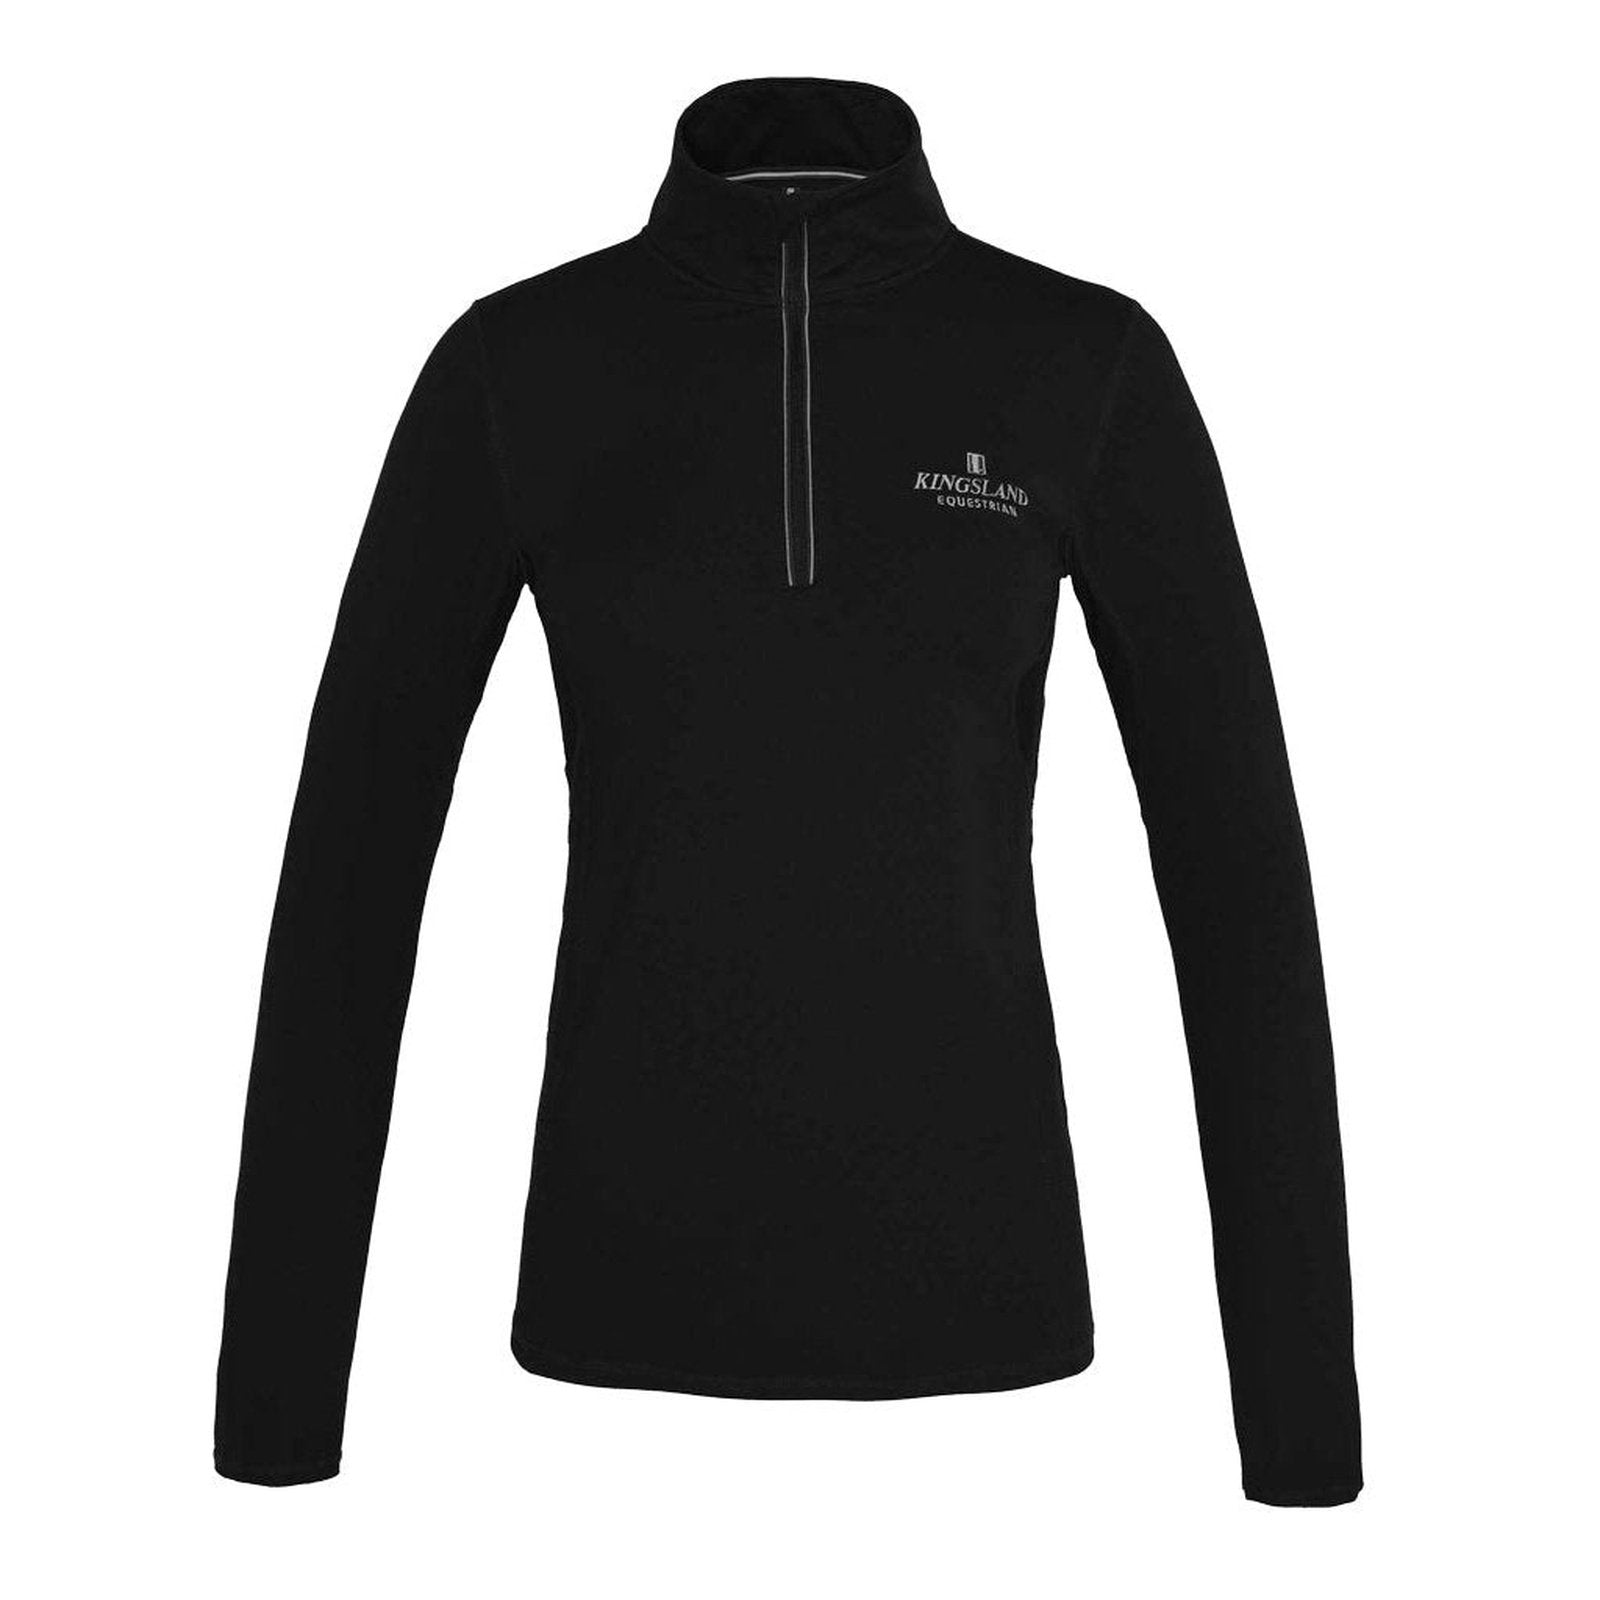 Kingsland Classic Damen Training Langarm-Shirt in schwarz bei SP-Reitsport Kingsland bei SP-Reitsport